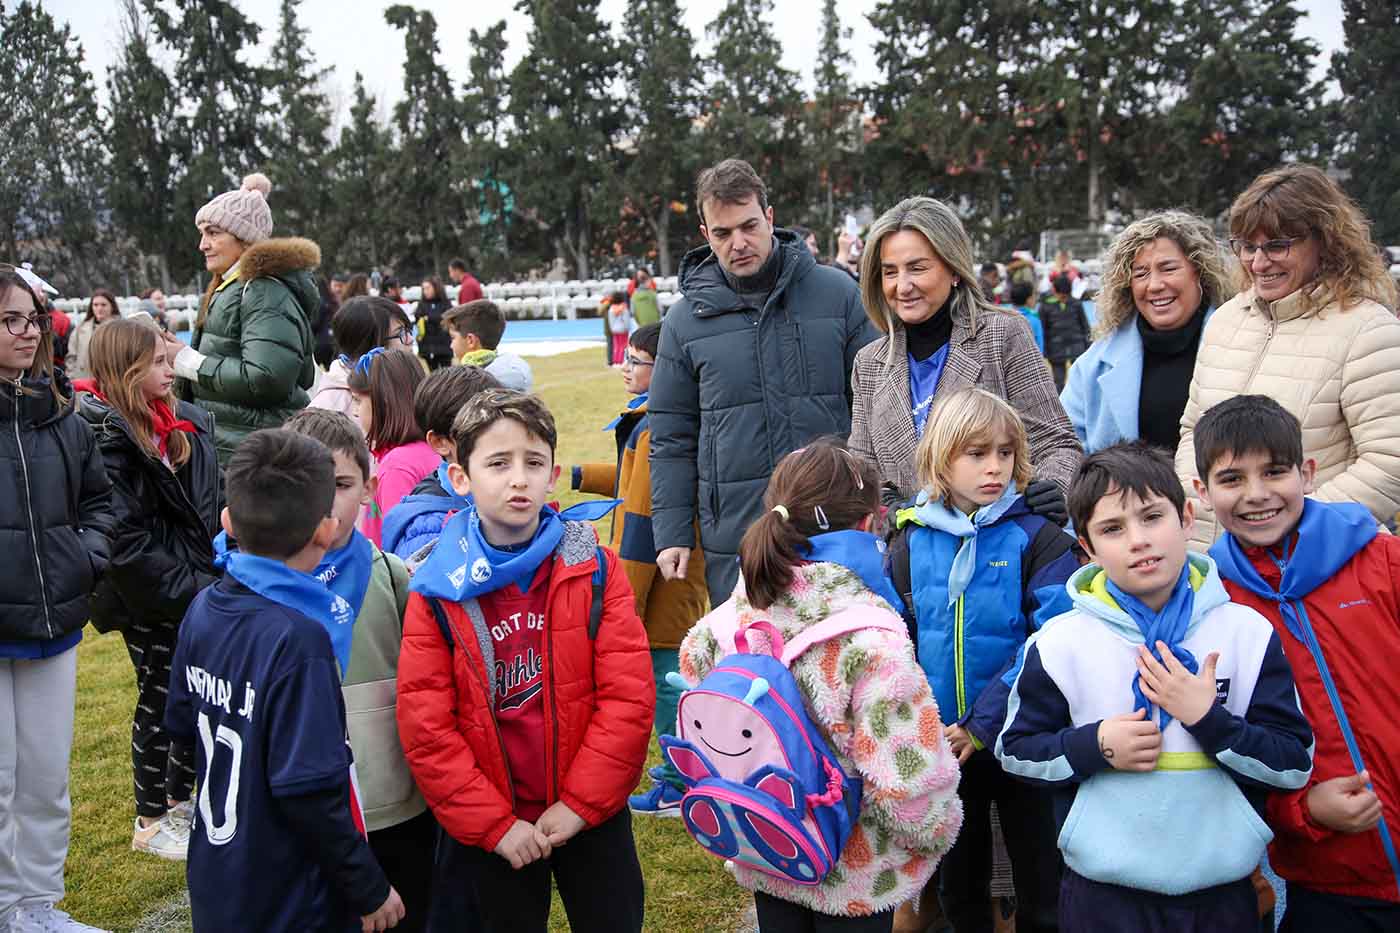 Toledo celebra sus Olimpiadas Escolares con apoyo del Ayuntamiento. “Auténtico ejemplo de políticas de inclusión”